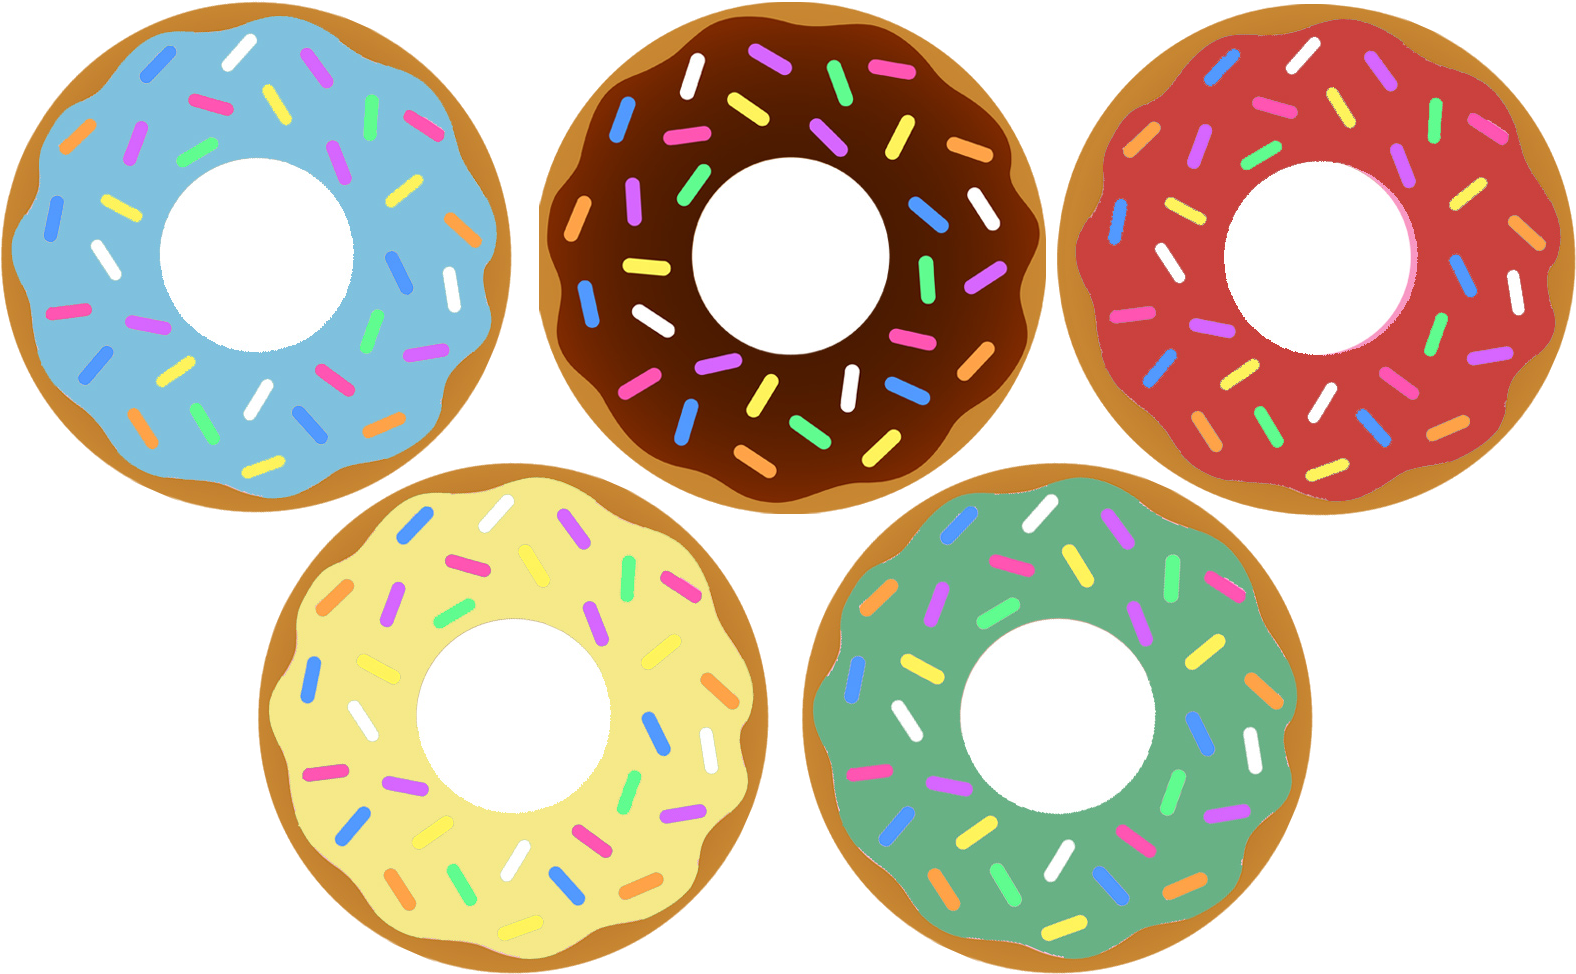 Assorted Sprinkled Doughnuts Illustration PNG image